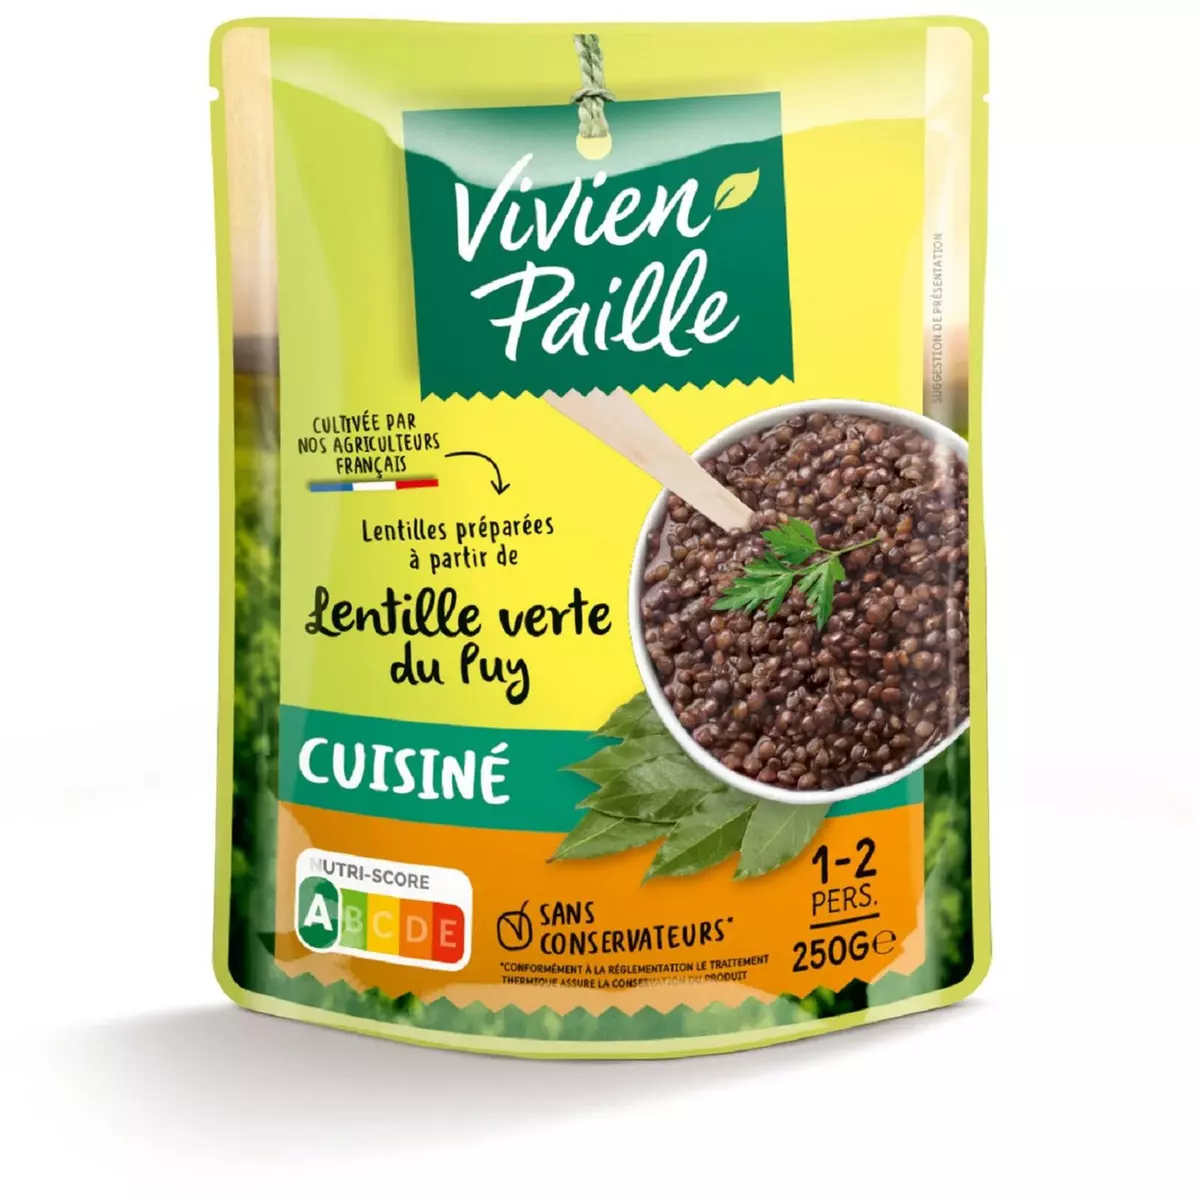 VIVIEN PAILLE Lentille verte du Puy cuisiné sachet express 1-2 personnes 250g